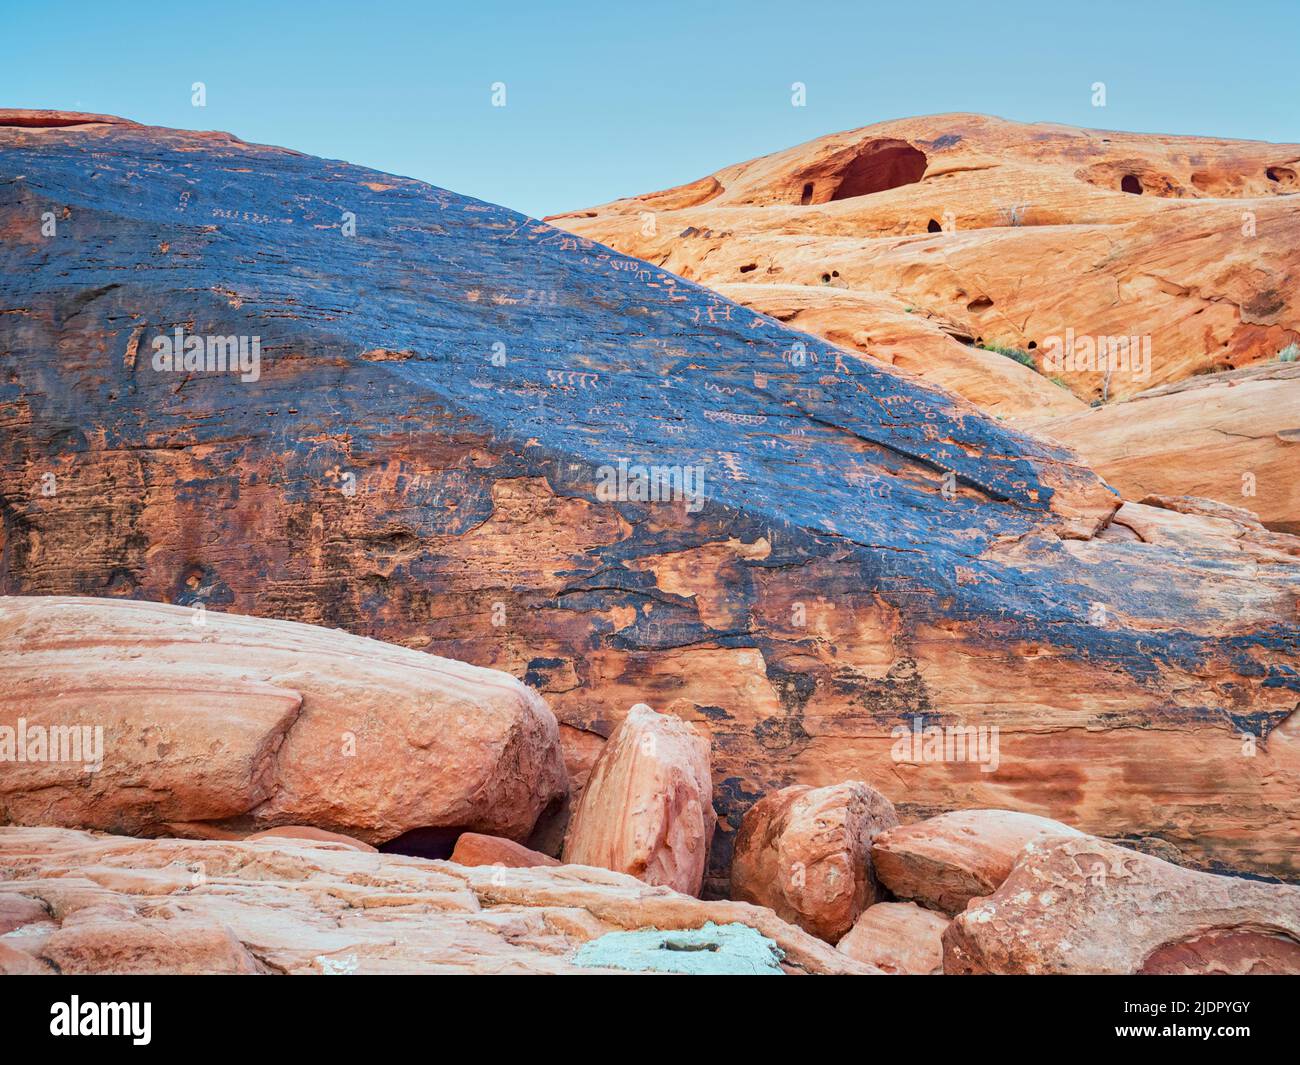 Formations de roches rouges avec pétroglyphes sculptures de roches par les anciennes cultures amérindiennes dans le désert de Mojave, parc national de la Vallée de feu, Nevada Banque D'Images